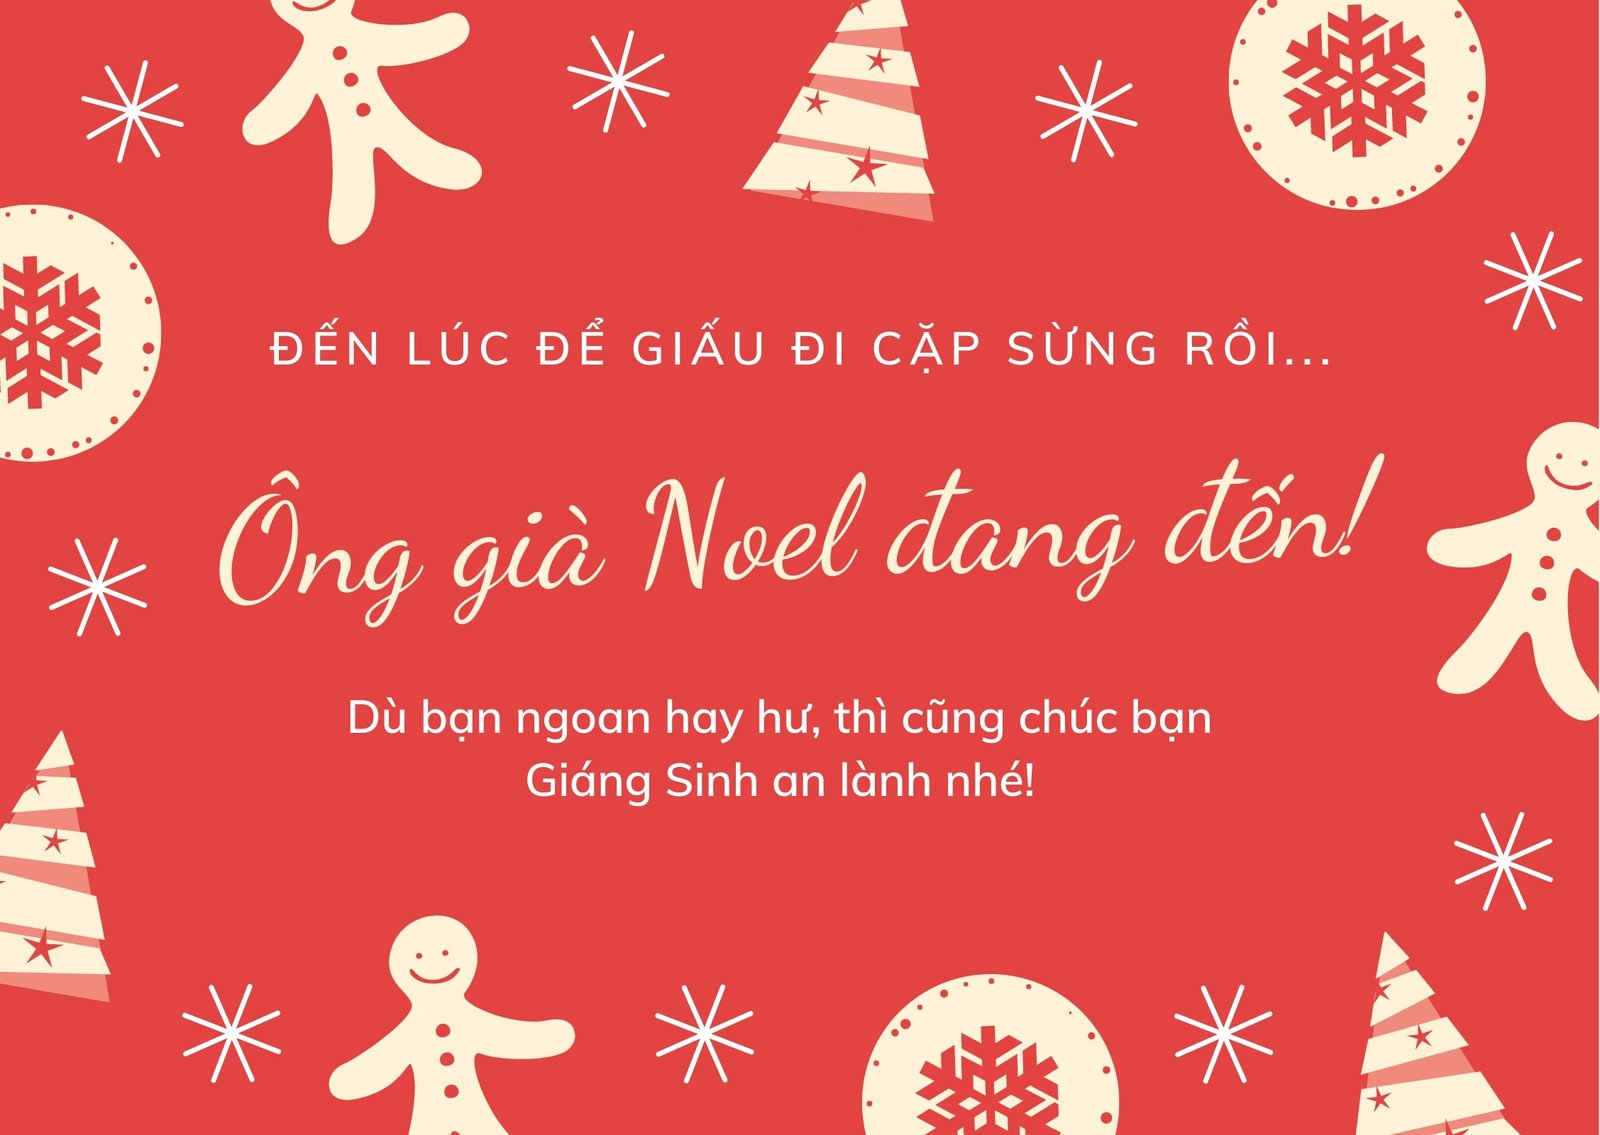 Thiệp Giáng Sinh: Thiệp Giáng Sinh đã trở thành một truyền thống đầy ý nghĩa trong đời sống của người Việt Nam. Nếu bạn muốn gửi lời chúc tốt đẹp đến gia đình, bạn bè trong mùa lễ hội này, hãy bắt đầu với Thiệp Giáng Sinh của chúng tôi!